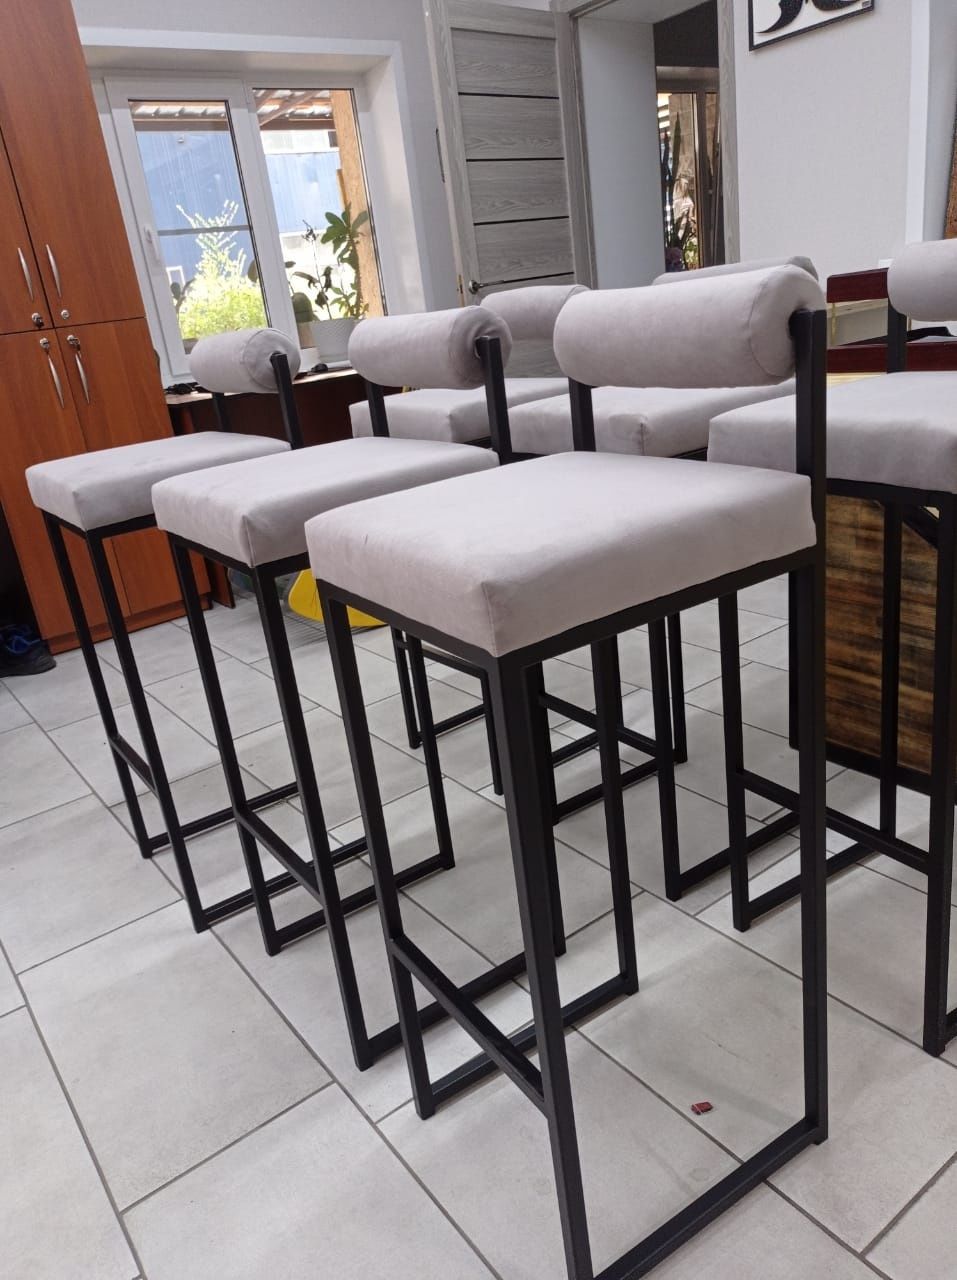 Столы стулья барные стойки  бары перегородки для кафе ресторанов и ба